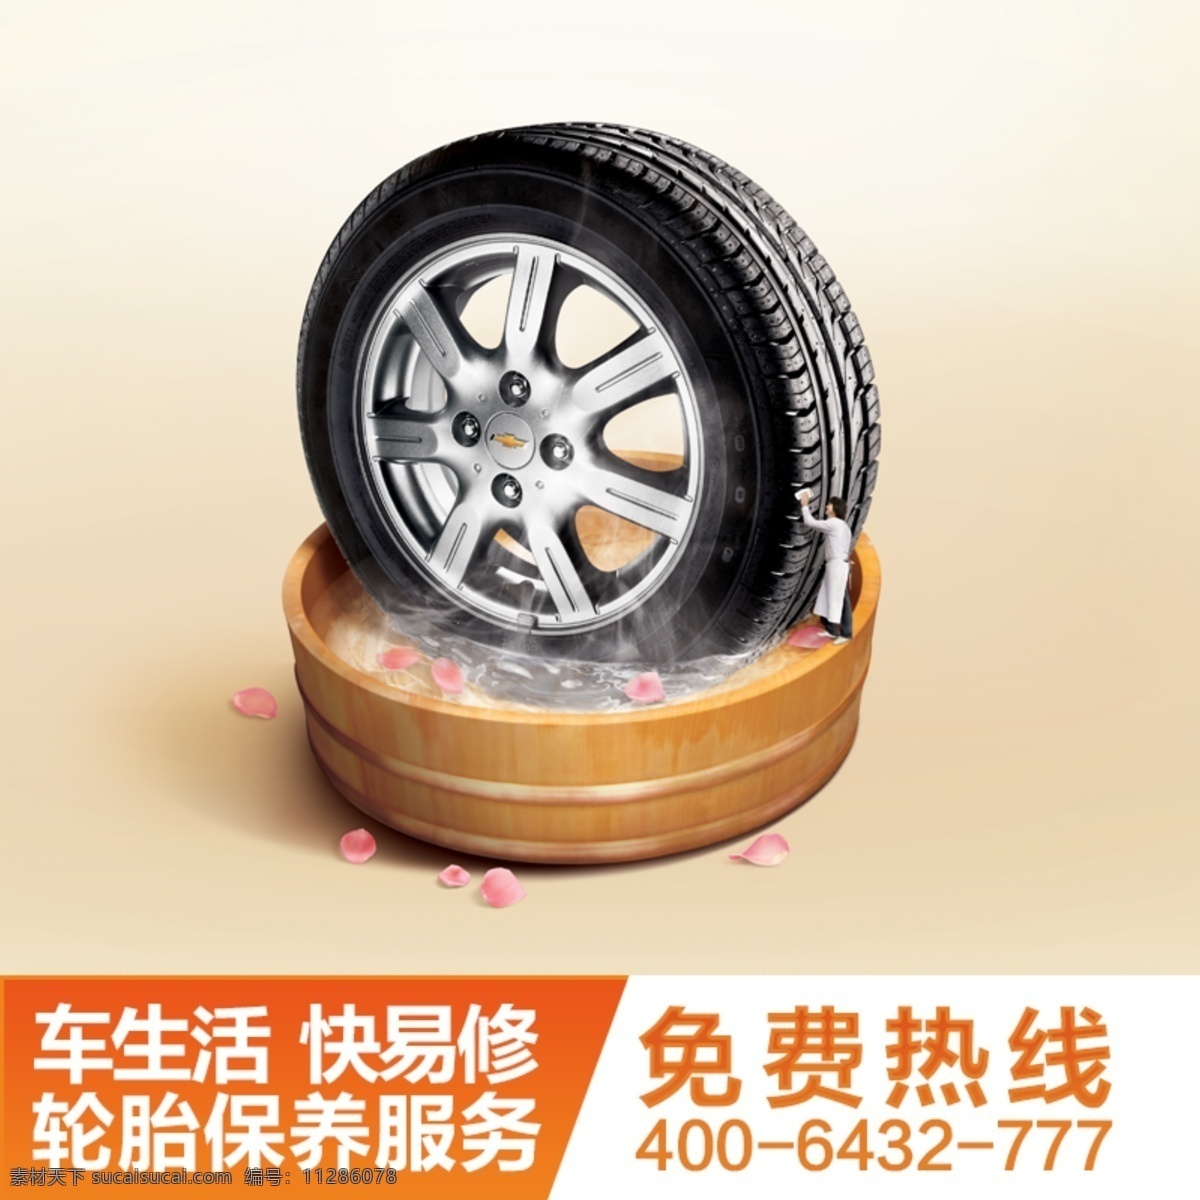 汽车轮胎 保养 安装 服务 轮胎 汽车 原创设计 原创淘宝设计